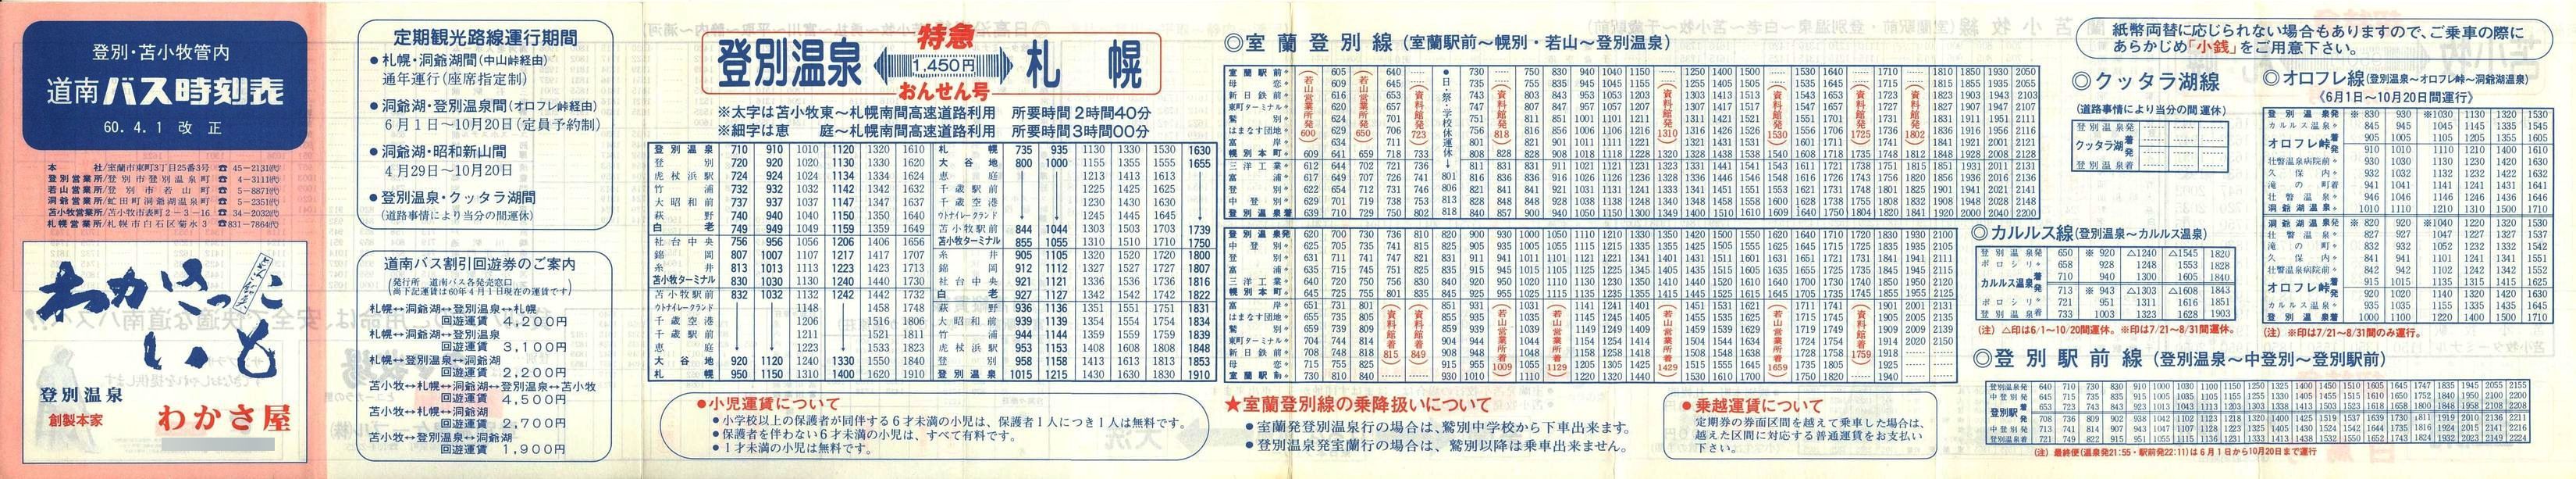 1985-04-01改正_道南バス_登別・苫小牧管内時刻表表面